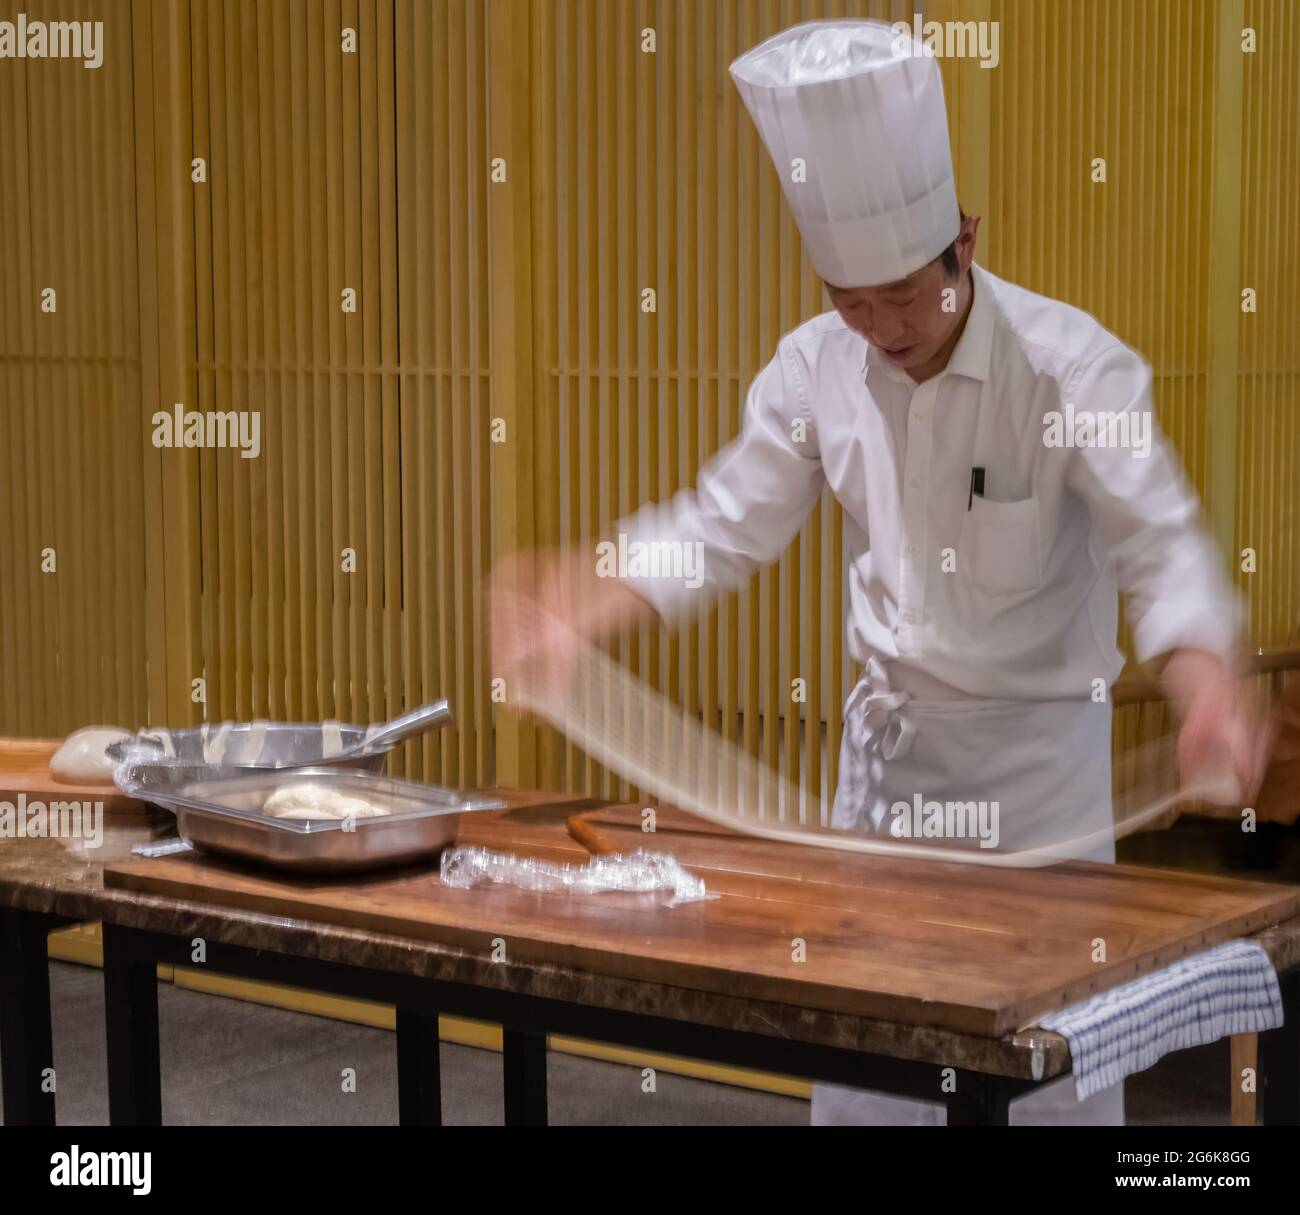 Uno chef produce spaghetti biang, conosciuti anche come spaghetti 'cintura' per il loro spessore e lunghezza, a Xi'an, nella provincia di Shaanxi, in Cina. Foto Stock